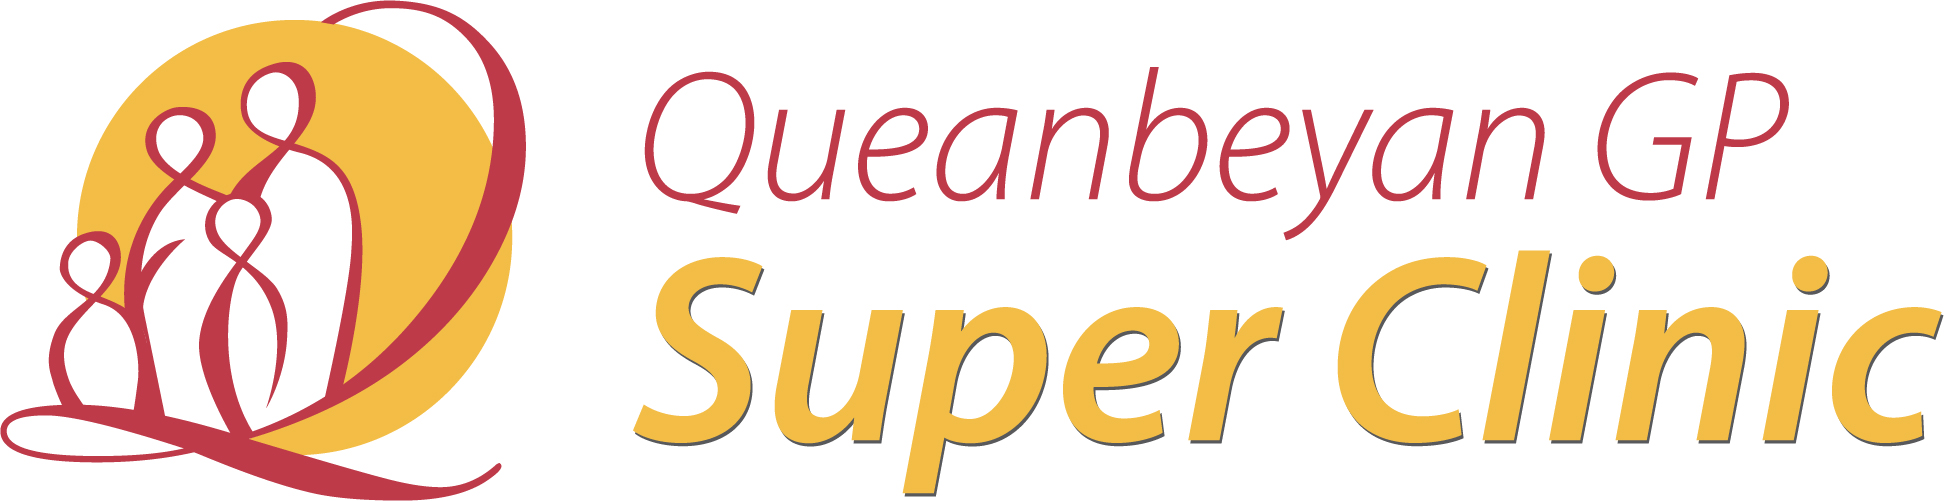 Queanbeyan GP Super Clinic 